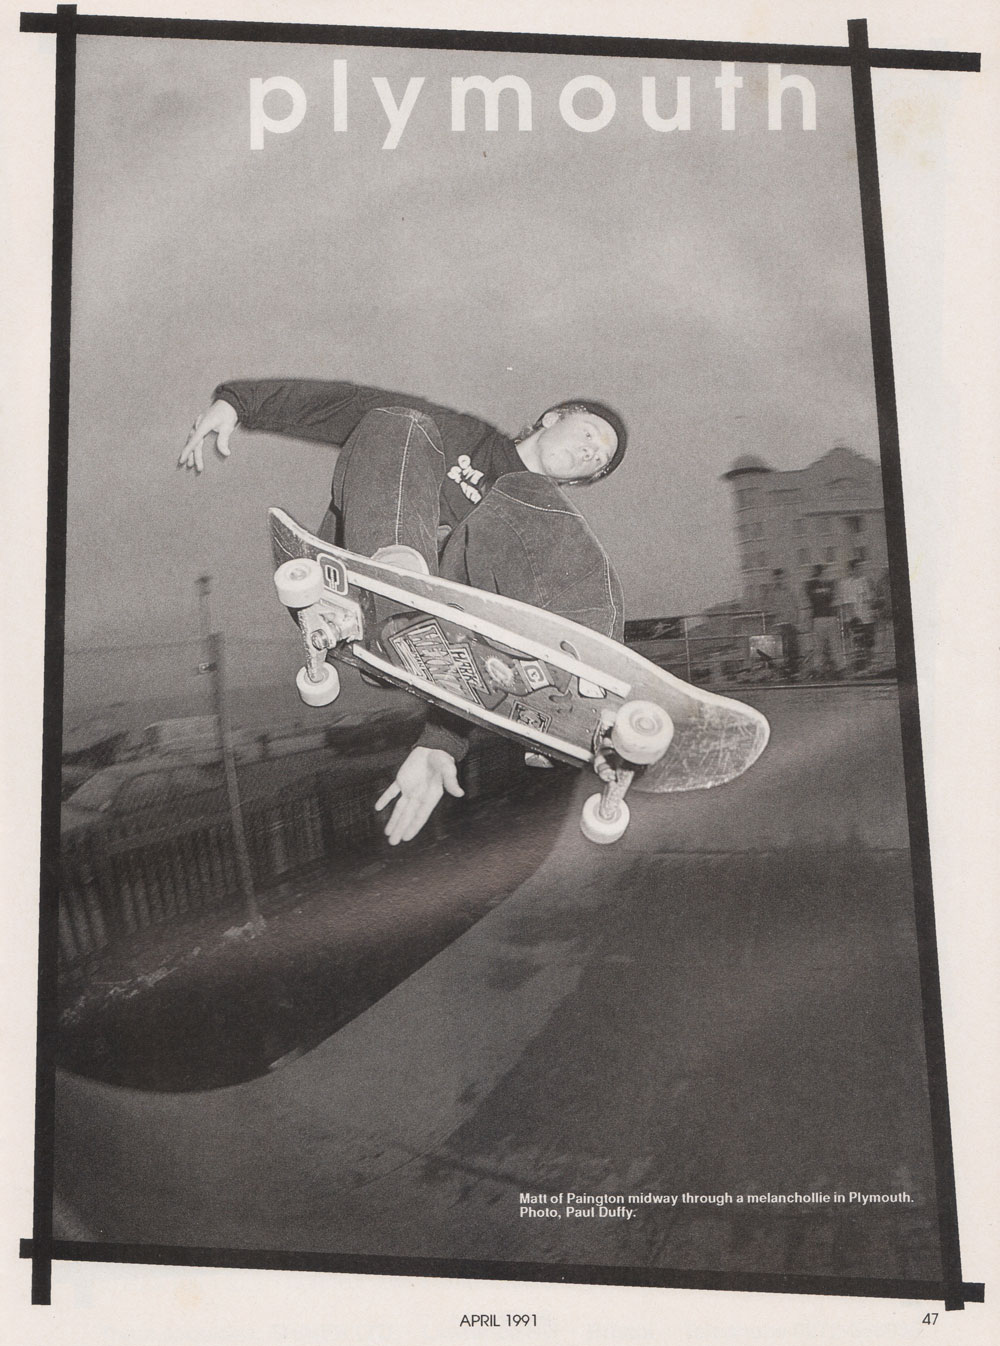 SkateboardAprilMattPaignton1991